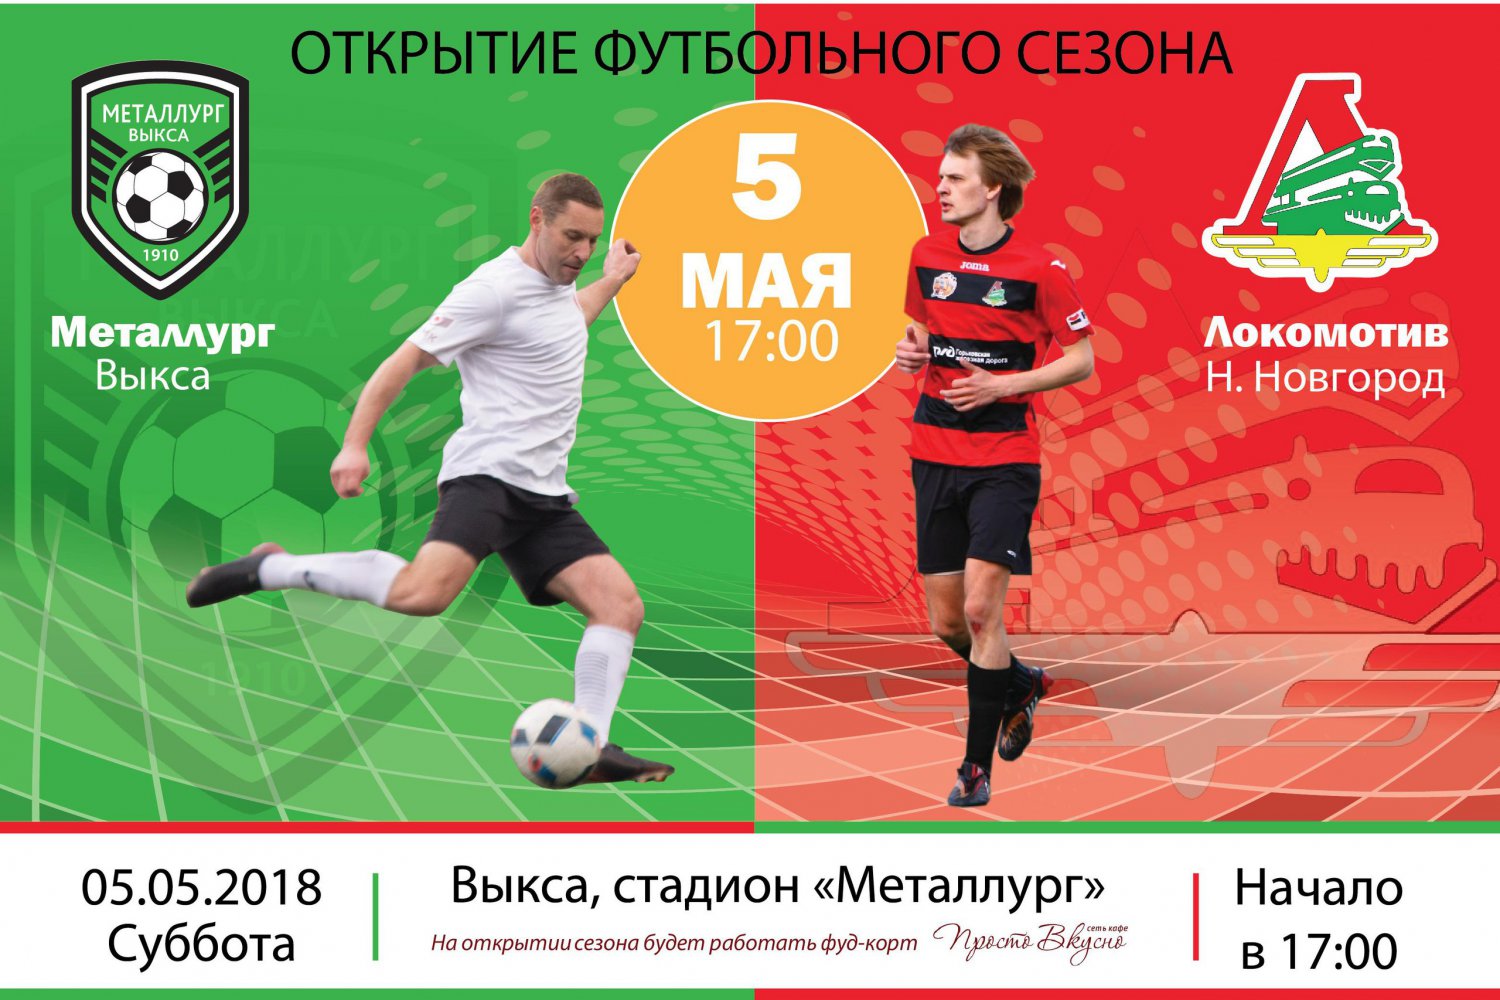 Футбол: «Металлург» Выкса — «Локомотив» Нижний Новгород